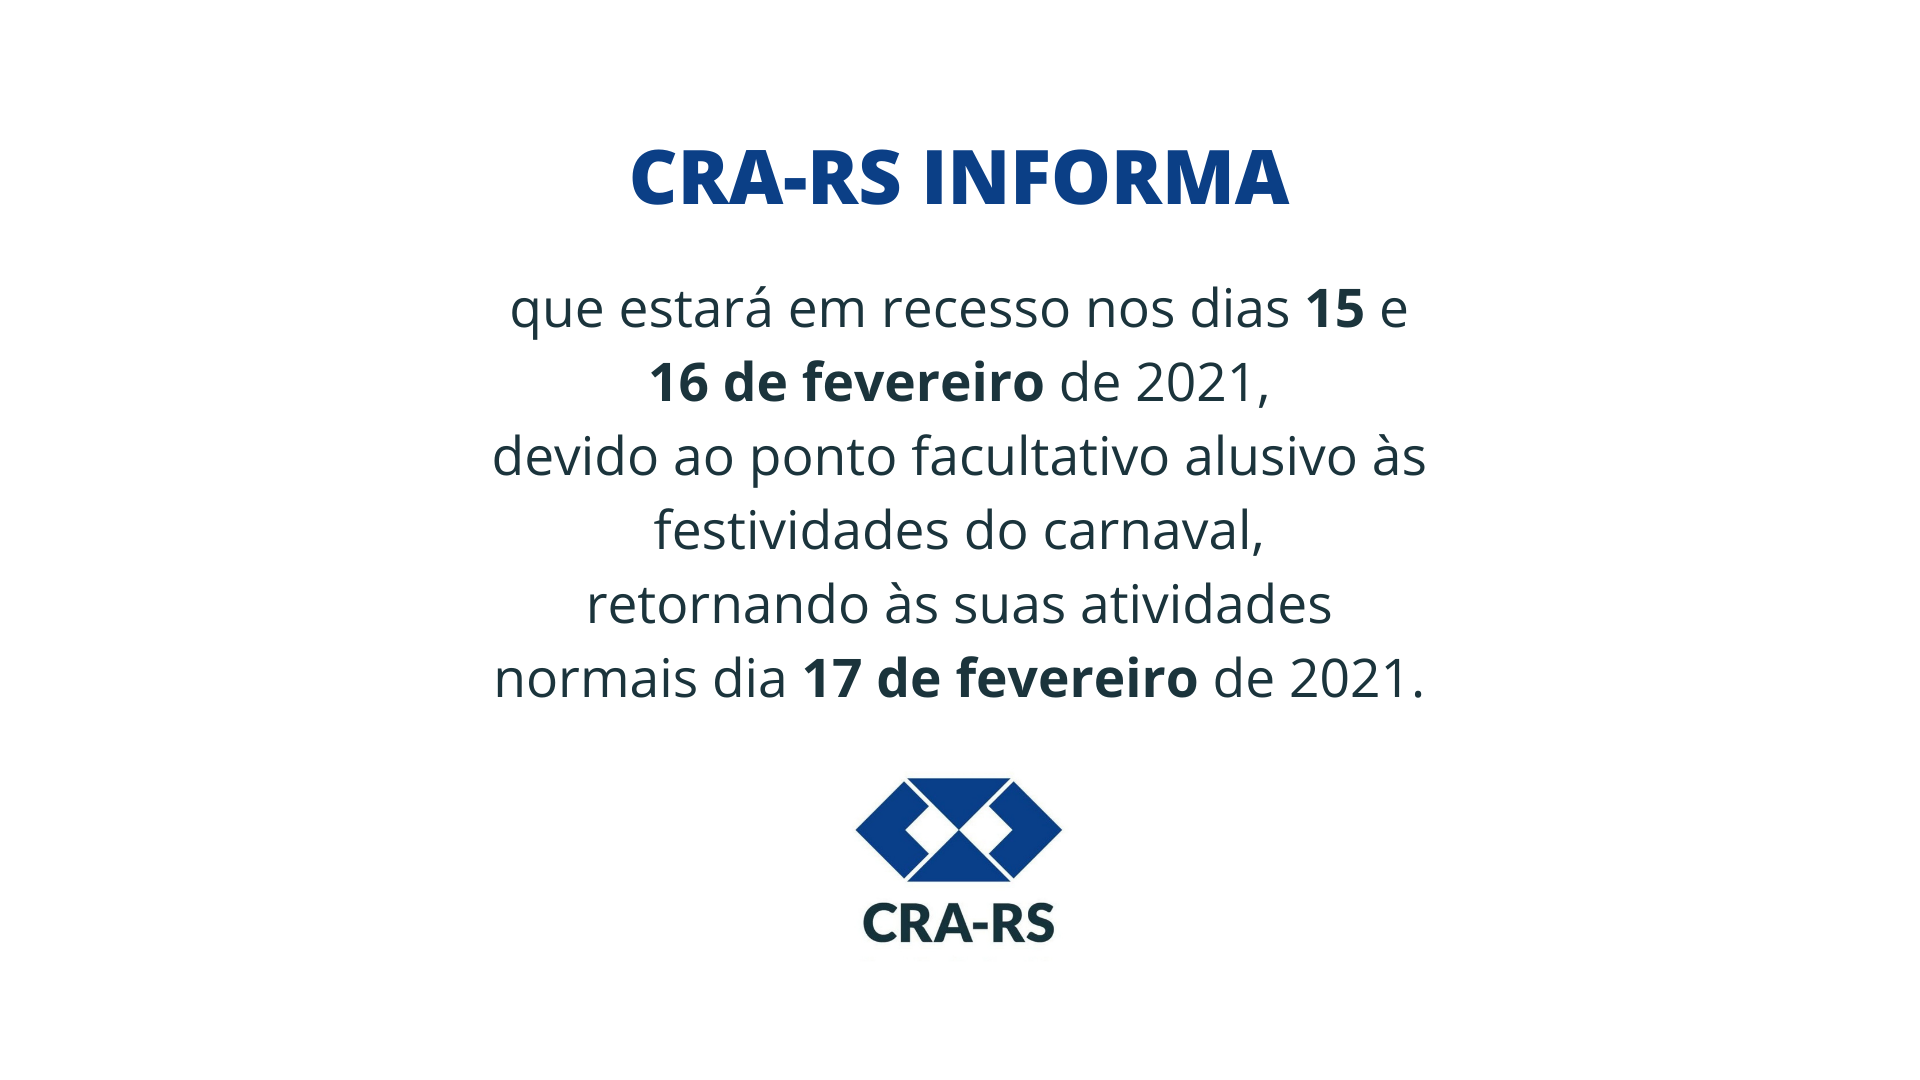 CRA-RS entra em recesso de carnaval